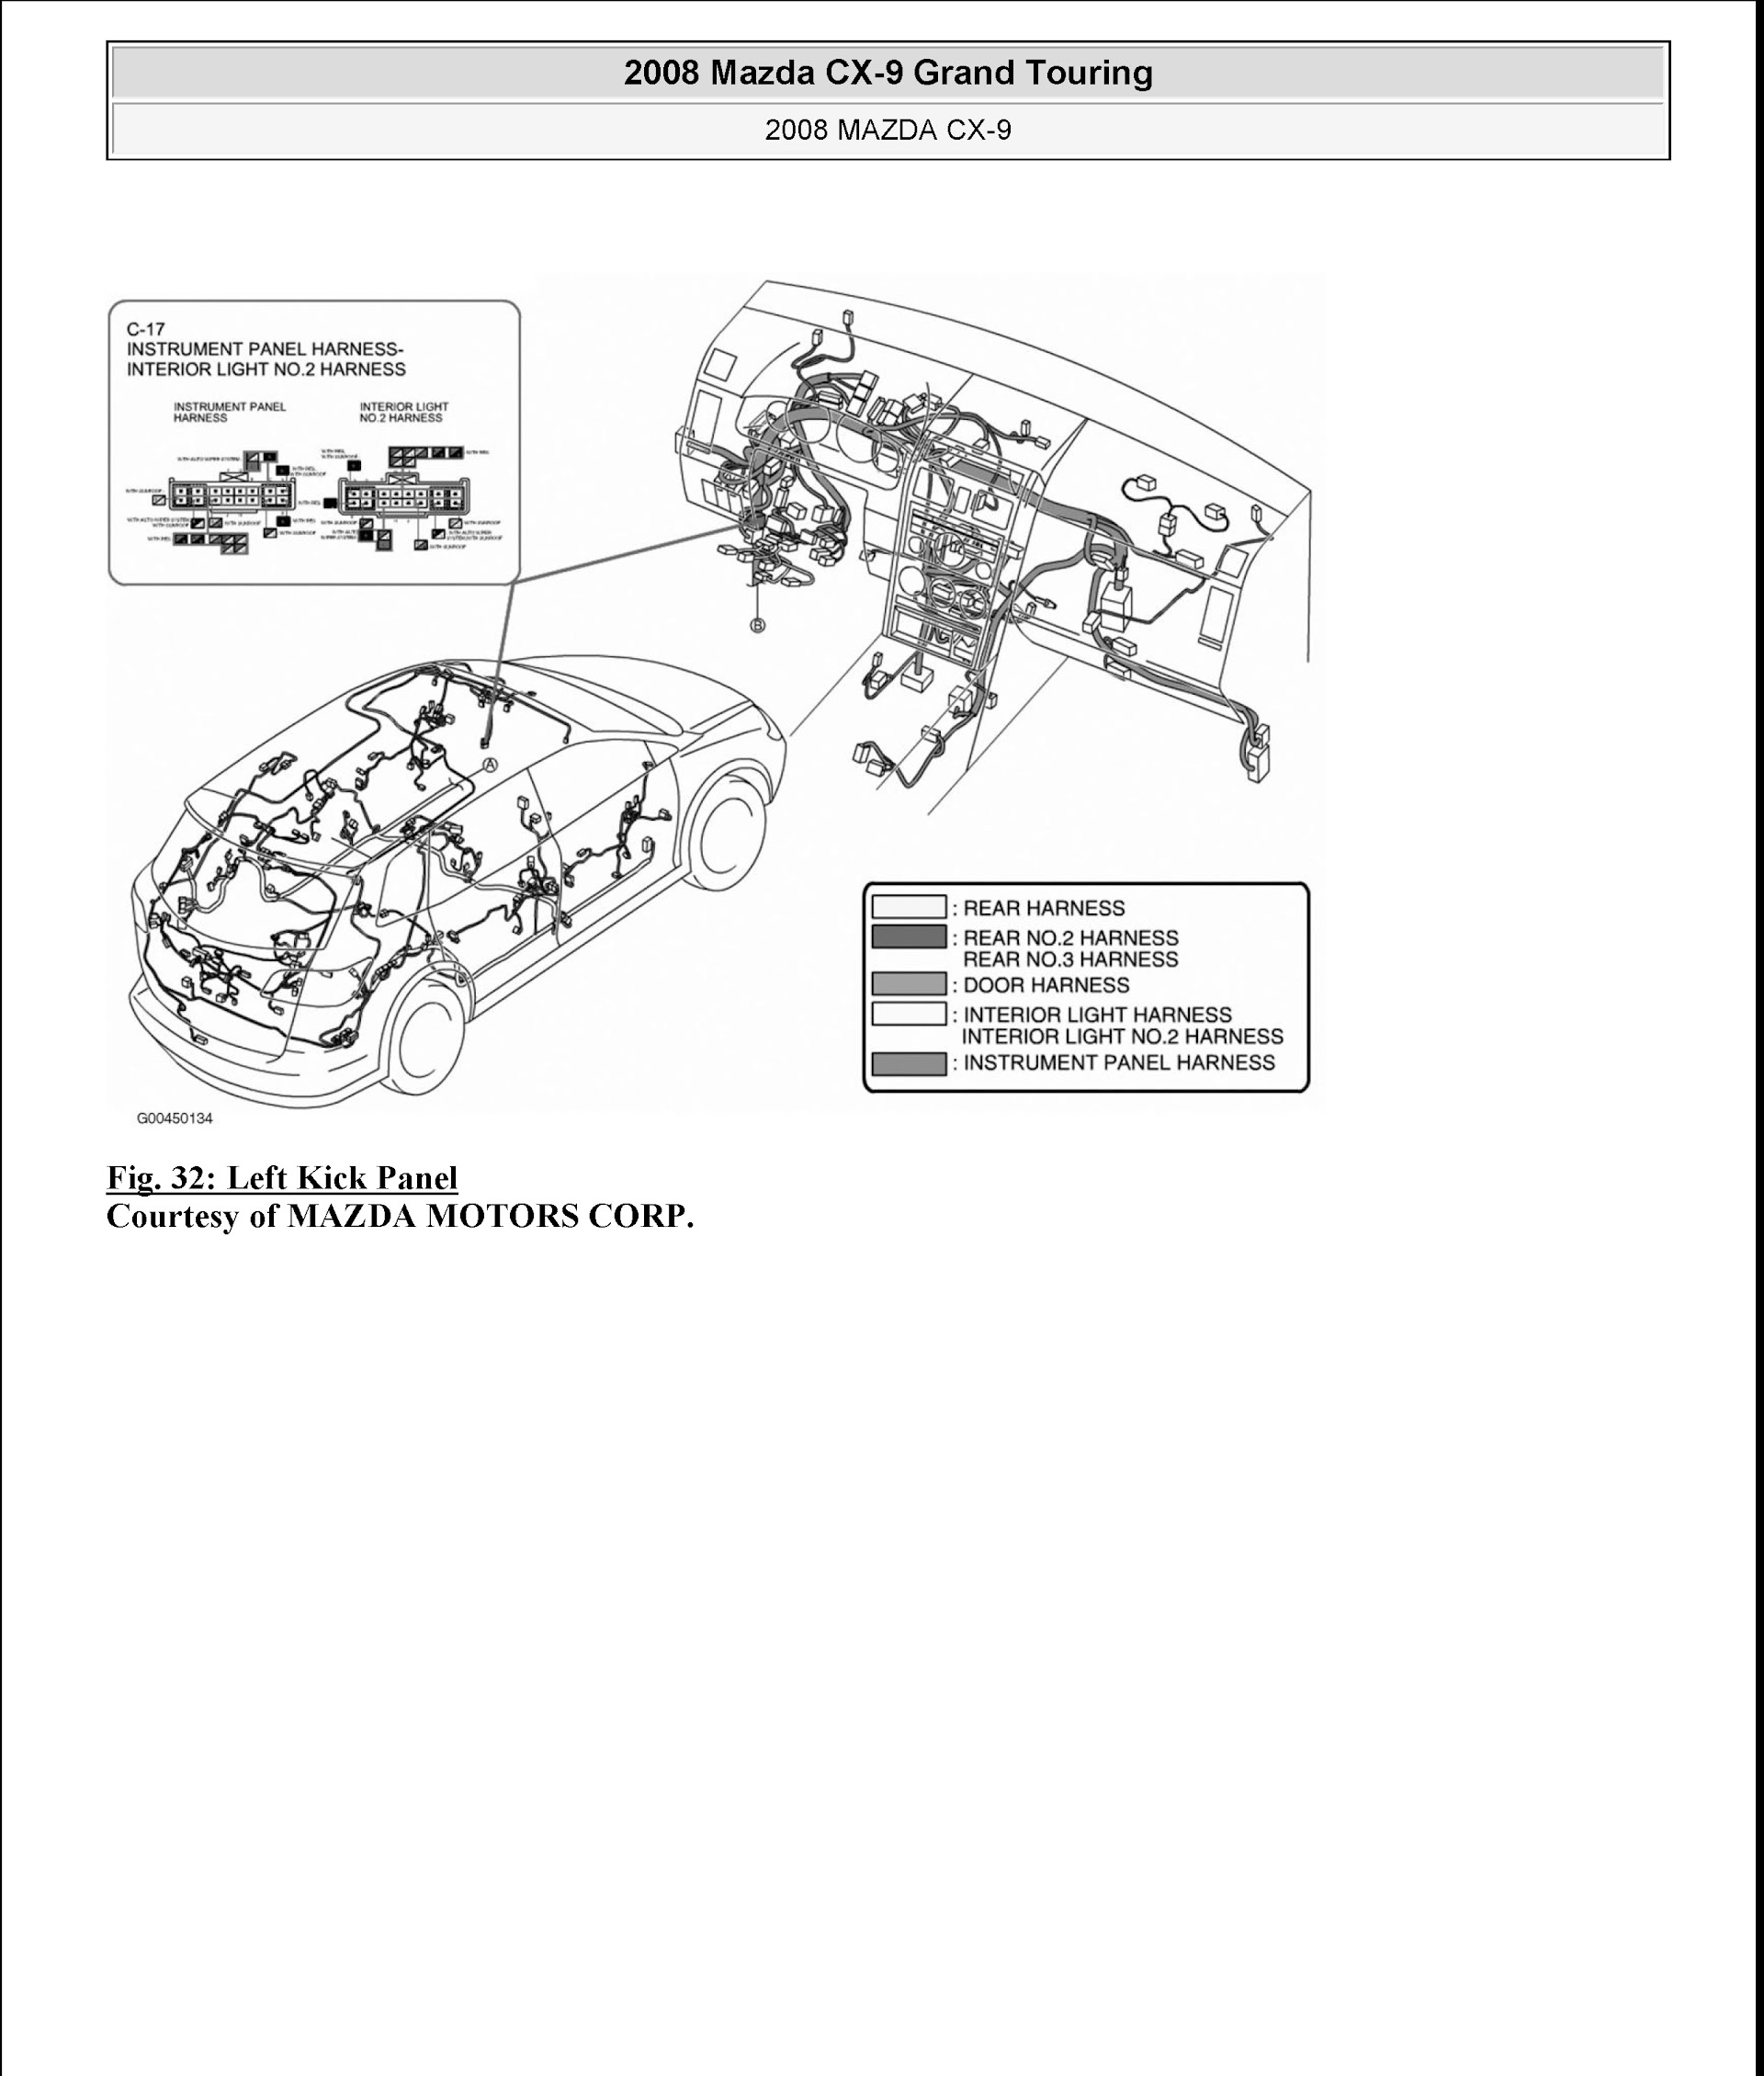 Download 2008 Mazda CX-9 Grand Touring Service Repair Manual